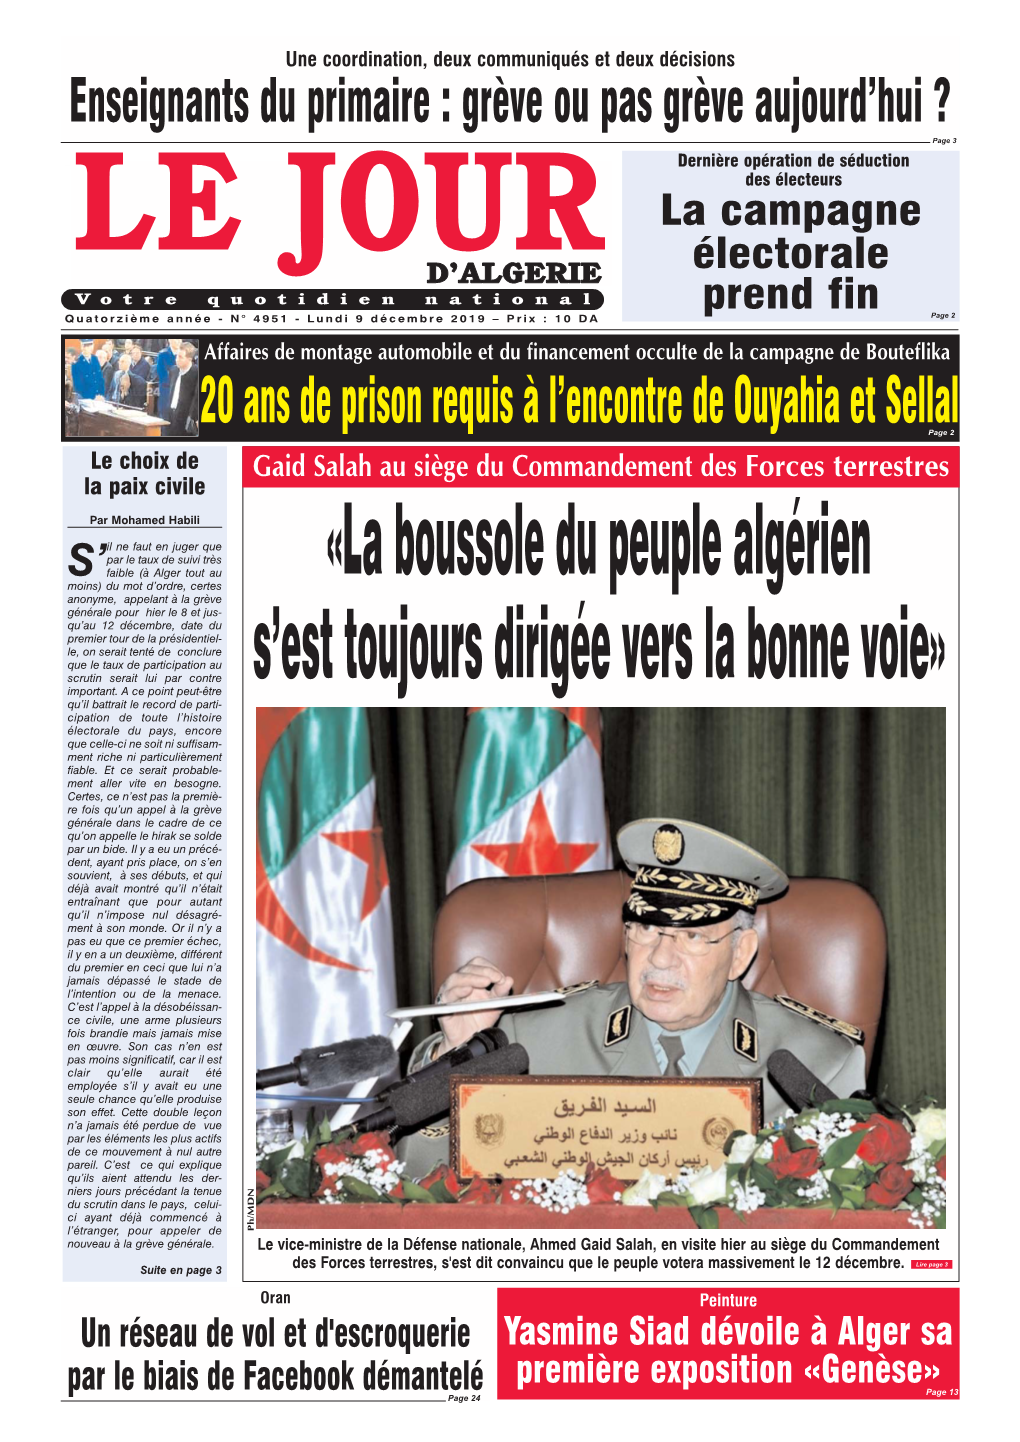 La Boussole Du Peuple Algérien S'est Toujours Dirigée